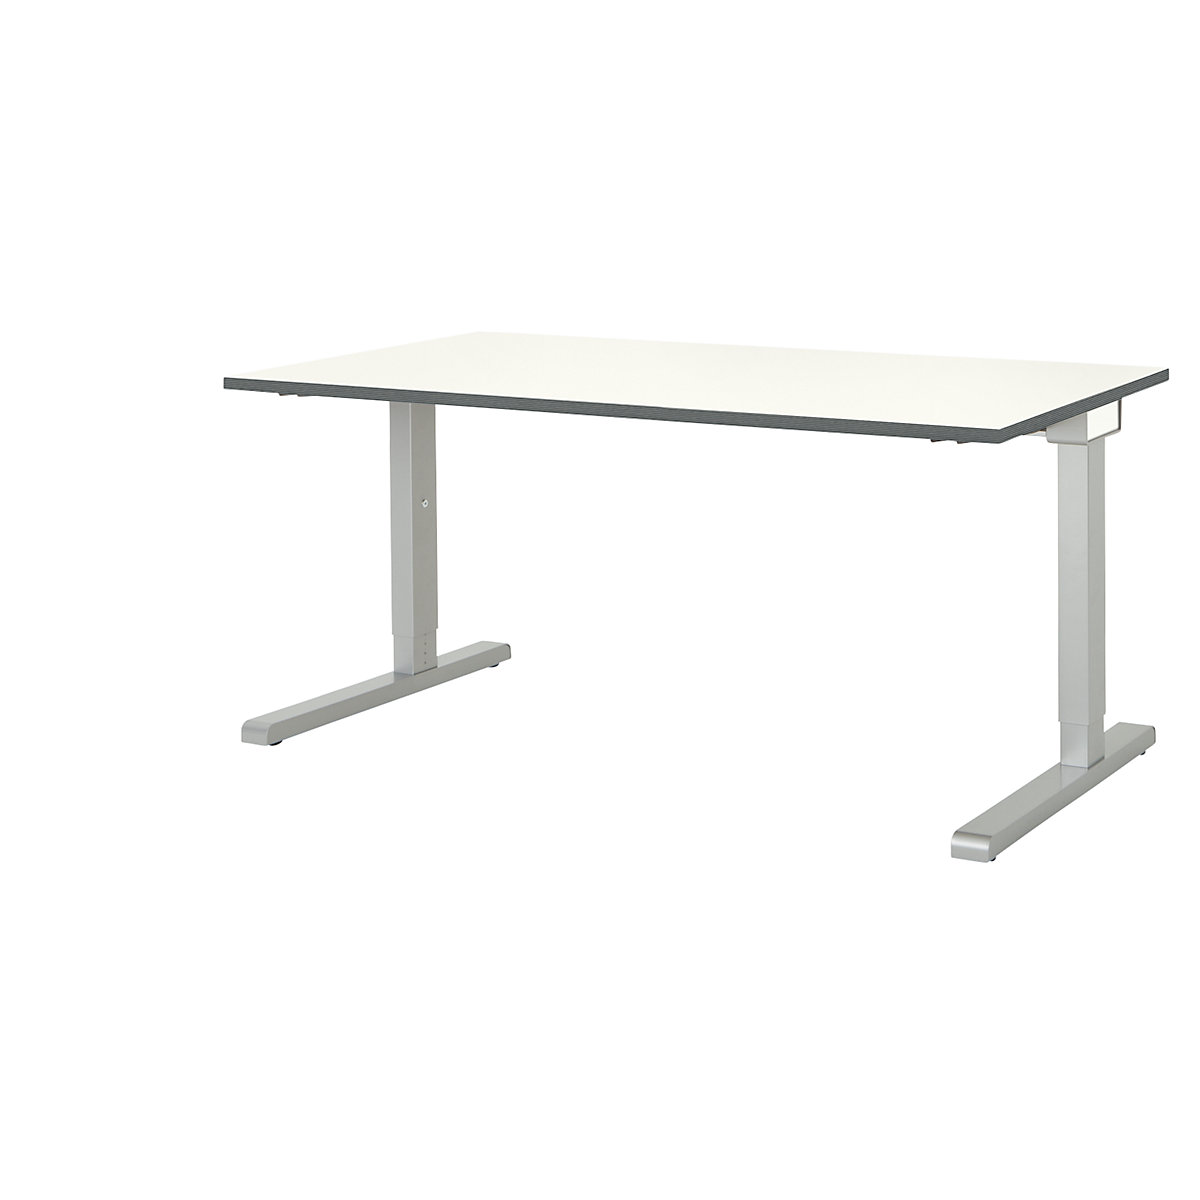 Pravokutni stol, noga u obliku slova C – mauser, ŠxD 1600 x 800 mm, ploča u bijeloj boji, postolje u boji aluminija-3